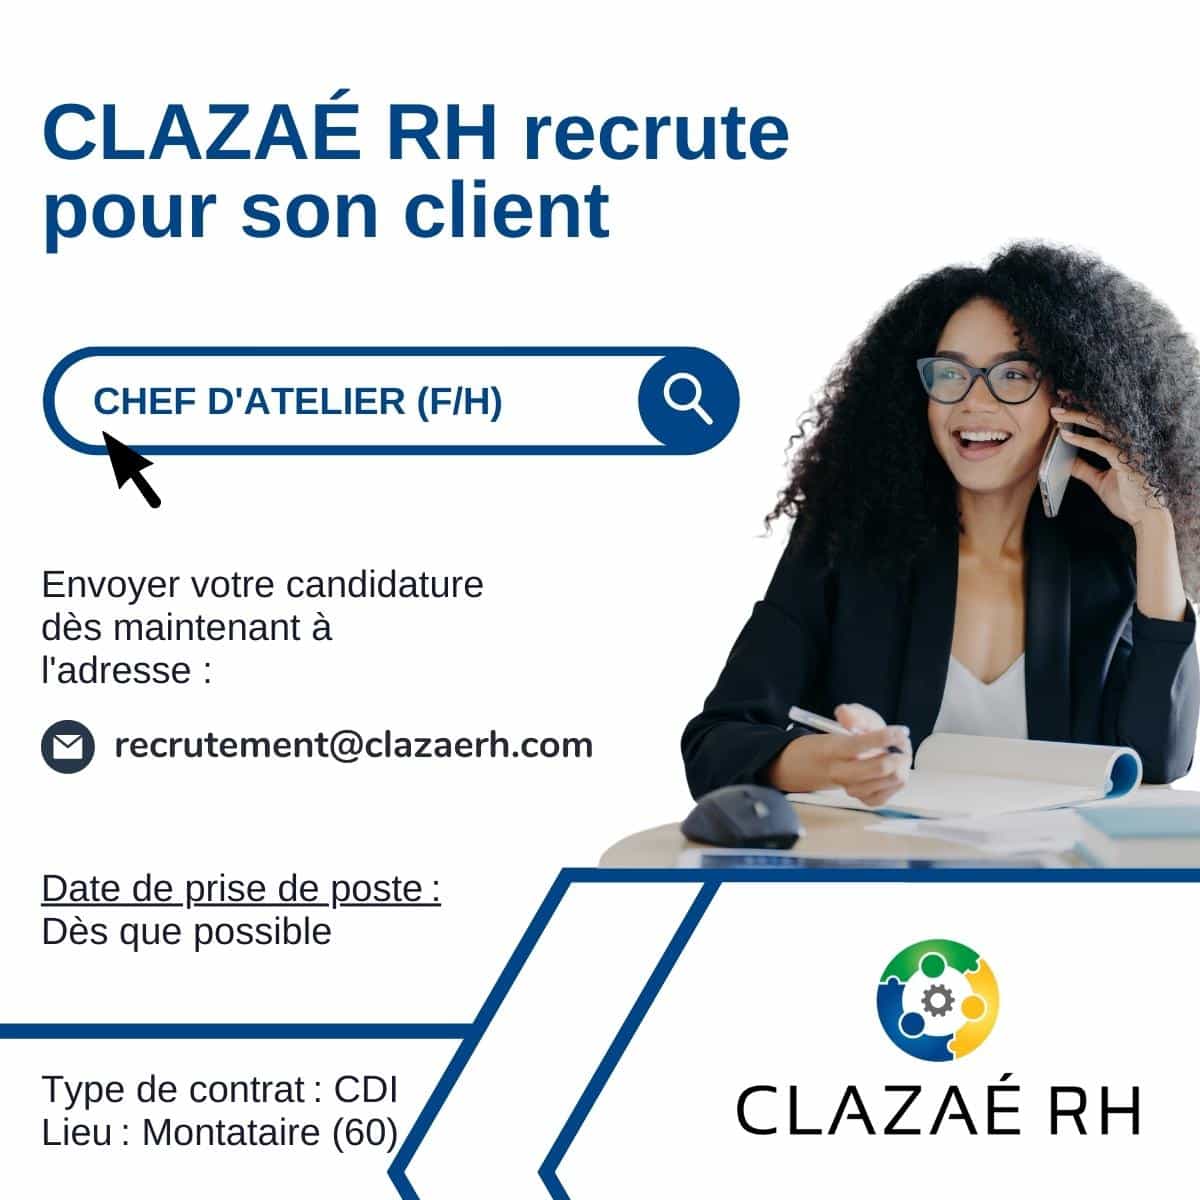 Campagne recrutement Clazae RH chef d'atelier